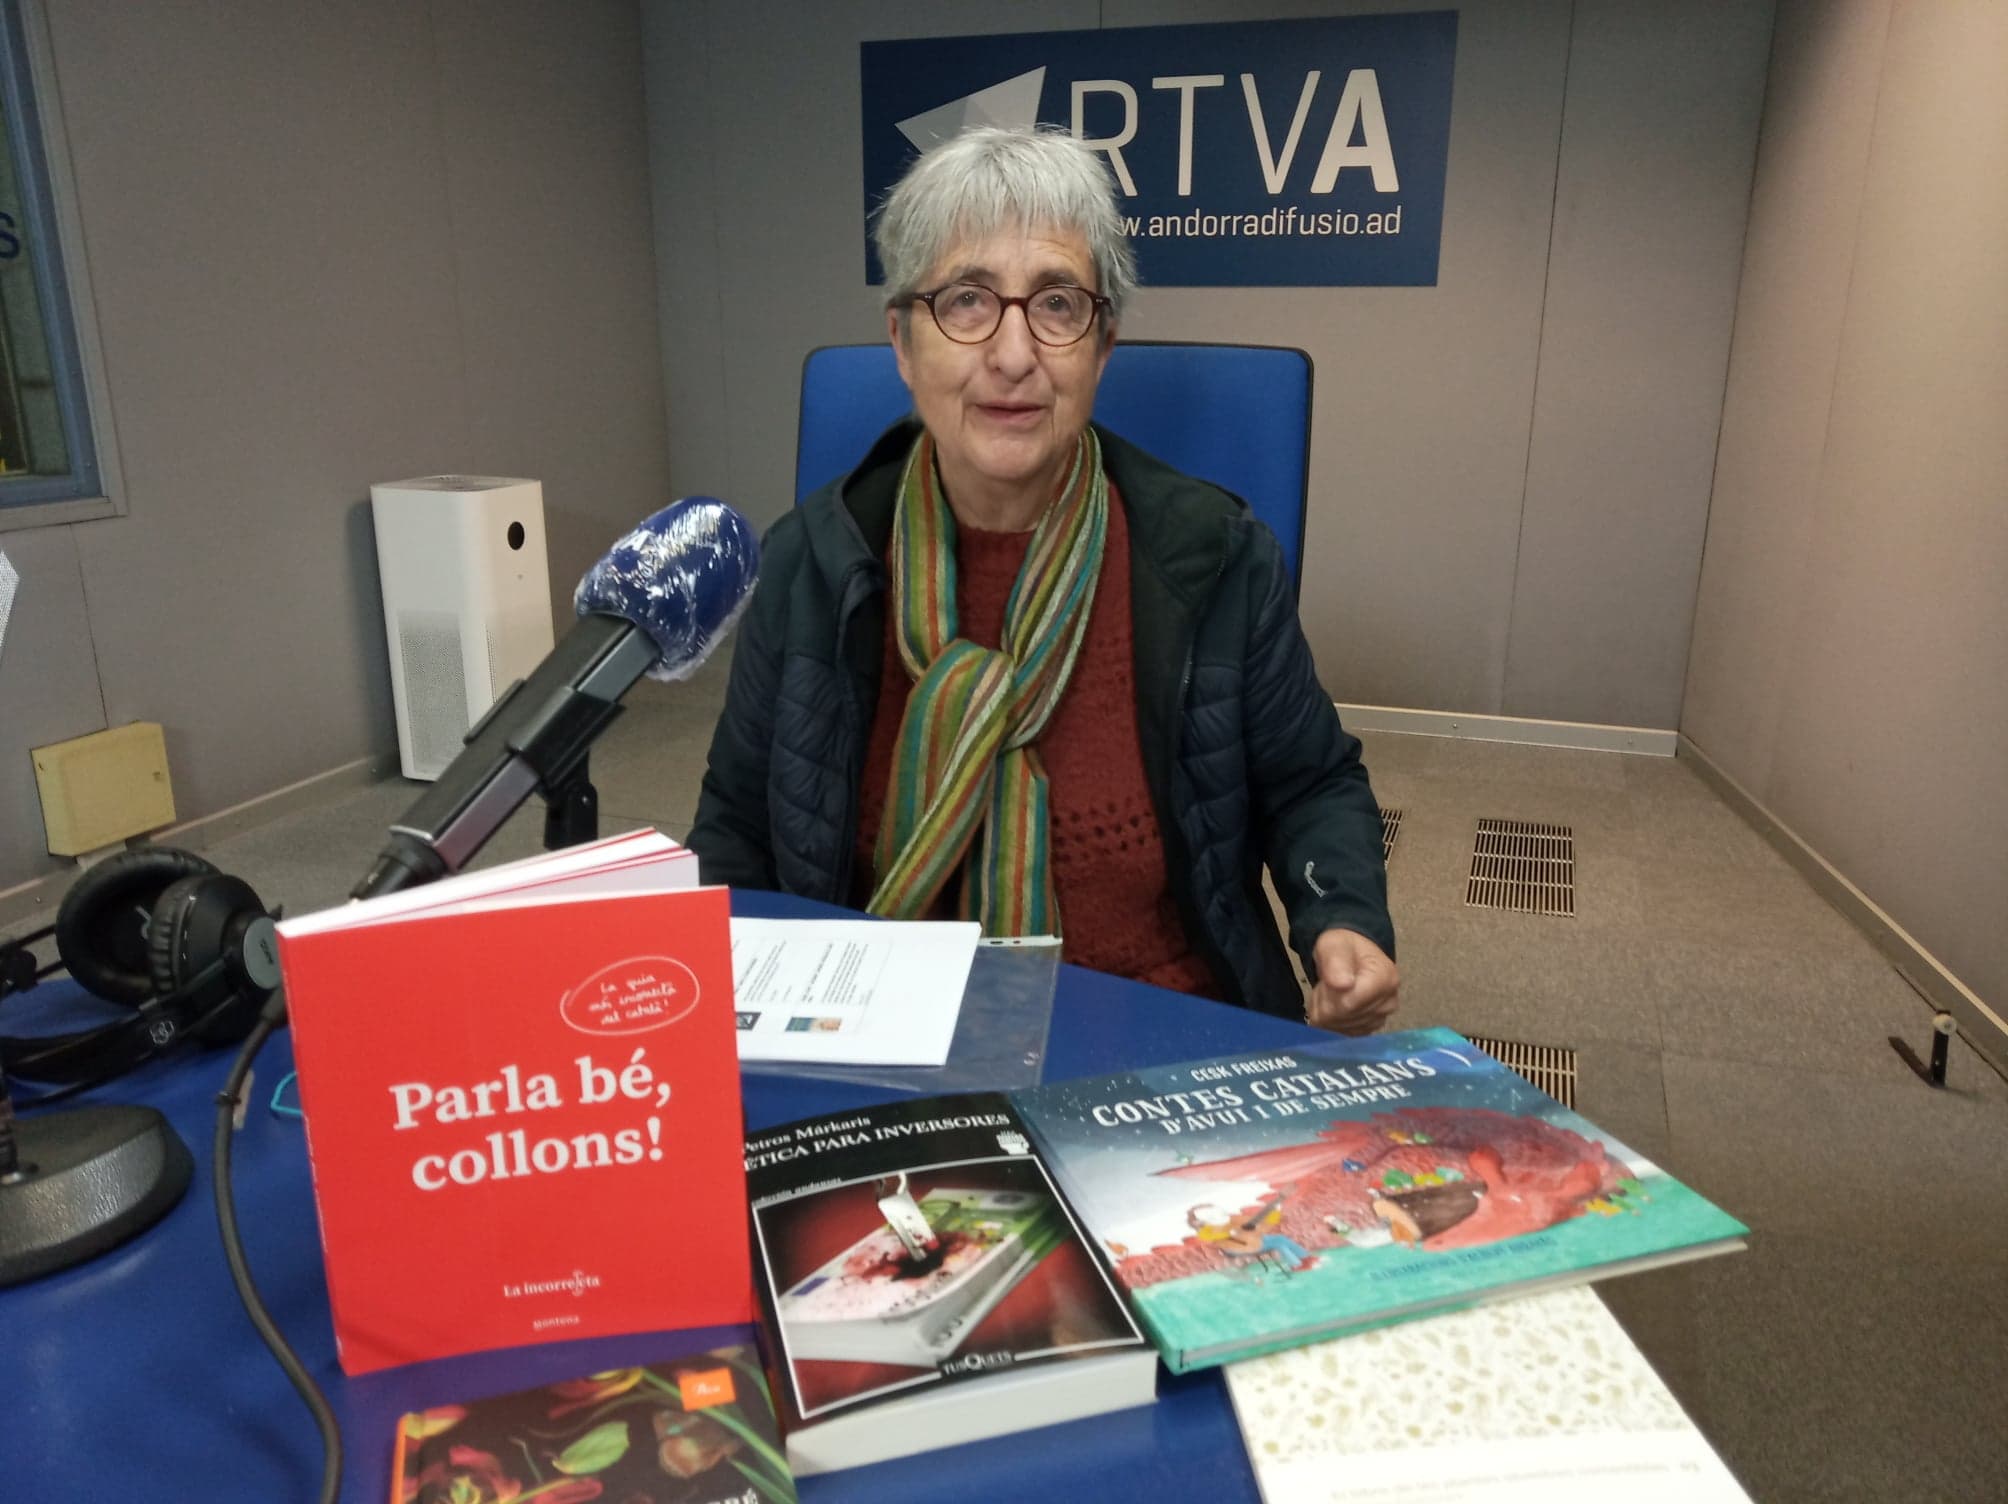 Obrim llibres amb Anna Riberaygua: Sant Jordi 2021